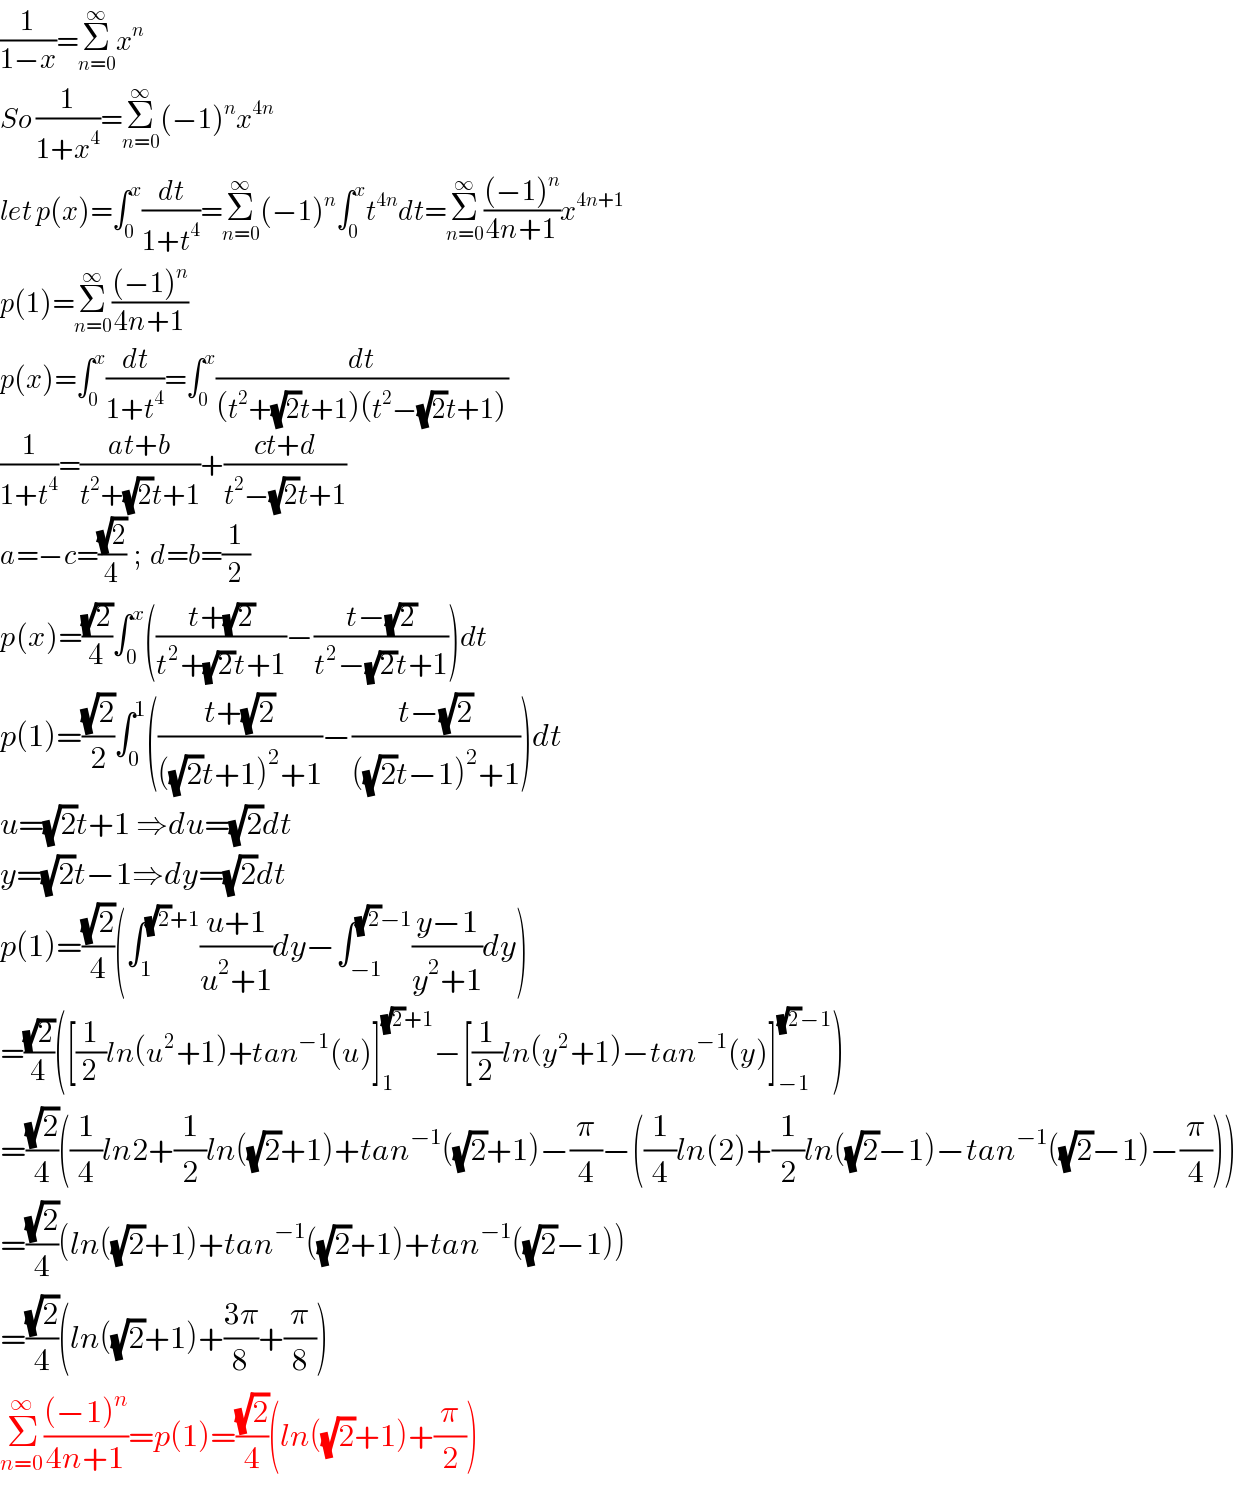 (1/(1−x))=Σ_(n=0) ^∞ x^n   So (1/(1+x^4 ))=Σ_(n=0) ^∞ (−1)^n x^(4n)   let p(x)=∫_0 ^x (dt/(1+t^4 ))=Σ_(n=0) ^∞ (−1)^n ∫_0 ^x t^(4n) dt=Σ_(n=0) ^∞ (((−1)^n )/(4n+1))x^(4n+1)   p(1)=Σ_(n=0) ^∞ (((−1)^n )/(4n+1))  p(x)=∫_0 ^x (dt/(1+t^4 ))=∫_0 ^x (dt/((t^2 +(√2)t+1)(t^2 −(√2)t+1)))  (1/(1+t^4 ))=((at+b)/(t^2 +(√2)t+1))+((ct+d)/(t^2 −(√2)t+1))  a=−c=((√2)/4)  ;  d=b=(1/2)  p(x)=((√2)/4)∫_0 ^x (((t+(√2))/(t^2 +(√2)t+1))−((t−(√2))/(t^2 −(√2)t+1)))dt  p(1)=((√2)/2)∫_0 ^1 (((t+(√2))/(((√2)t+1)^2 +1))−((t−(√2))/(((√2)t−1)^2 +1)))dt  u=(√2)t+1 ⇒du=(√2)dt  y=(√2)t−1⇒dy=(√2)dt  p(1)=((√2)/4)(∫_1 ^((√2)+1) ((u+1)/(u^2 +1))dy−∫_(−1) ^((√2)−1) ((y−1)/(y^2 +1))dy)  =((√2)/4)([(1/2)ln(u^2 +1)+tan^(−1) (u)]_1 ^((√2)+1) −[(1/2)ln(y^2 +1)−tan^(−1) (y)]_(−1) ^((√2)−1) )  =((√2)/4)((1/4)ln2+(1/2)ln((√2)+1)+tan^(−1) ((√2)+1)−(π/4)−((1/4)ln(2)+(1/2)ln((√2)−1)−tan^(−1) ((√2)−1)−(π/4)))  =((√2)/4)(ln((√2)+1)+tan^(−1) ((√2)+1)+tan^(−1) ((√2)−1))  =((√2)/4)(ln((√2)+1)+((3π)/8)+(π/8))  Σ_(n=0) ^∞ (((−1)^n )/(4n+1))=p(1)=((√2)/4)(ln((√2)+1)+(π/2))  